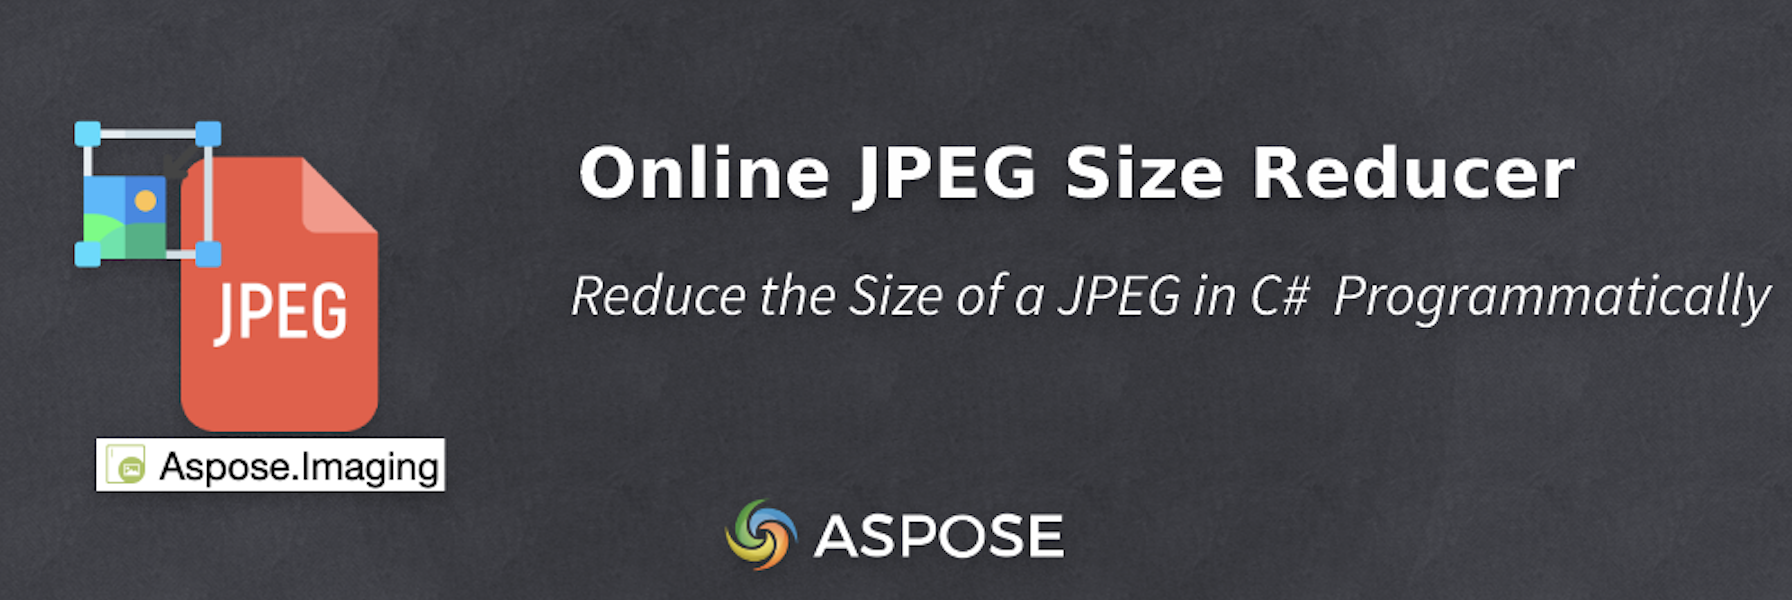 Уменьшение размера JPEG в C# — онлайн-редуктор размера JPEG